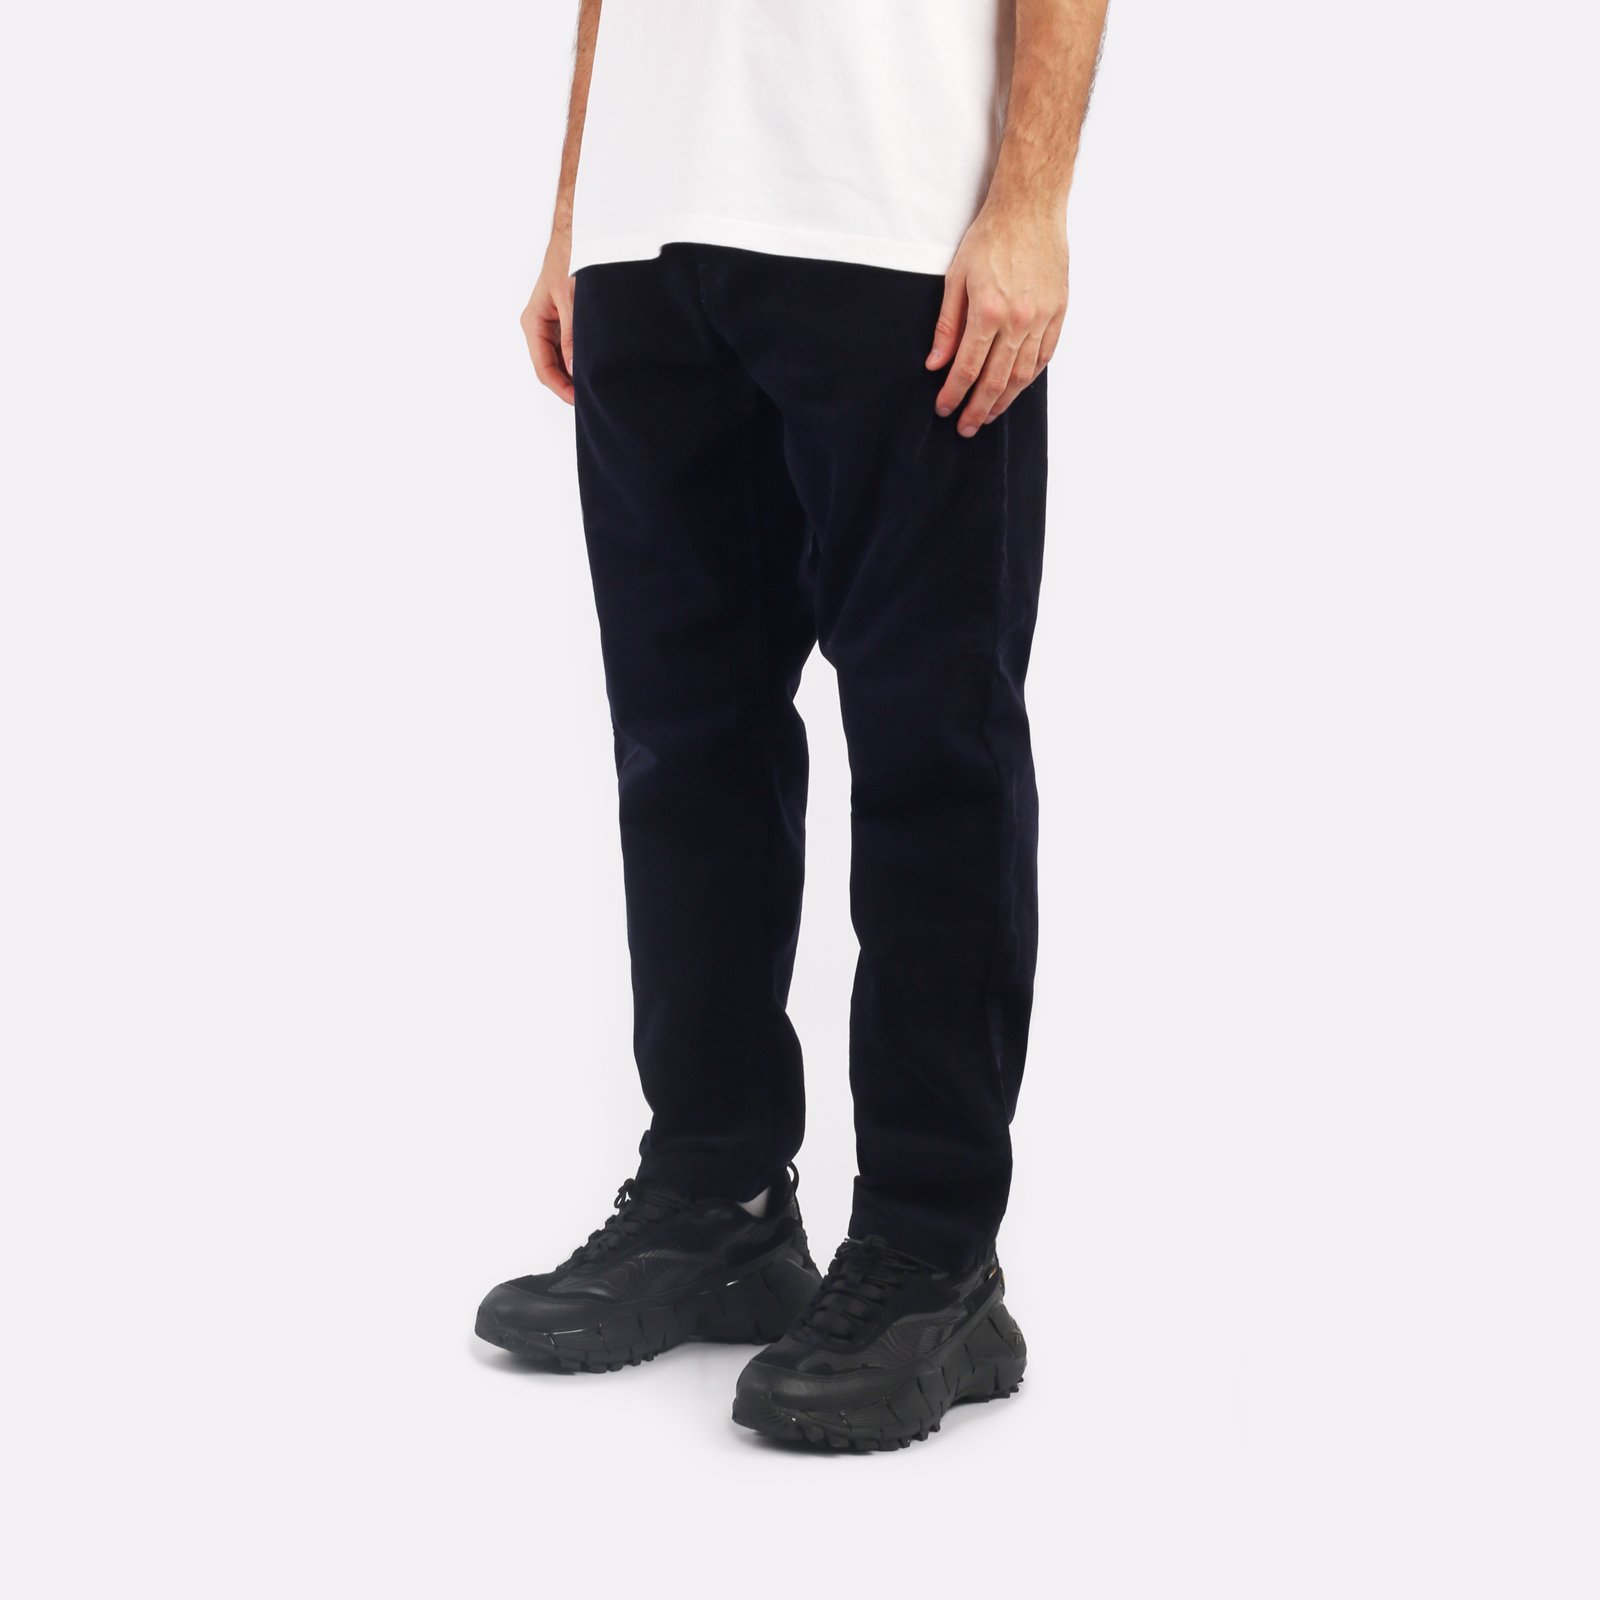 мужские синие брюки Carhartt WIP Newel Pant I031456-dark_navy - цена, описание, фото 3